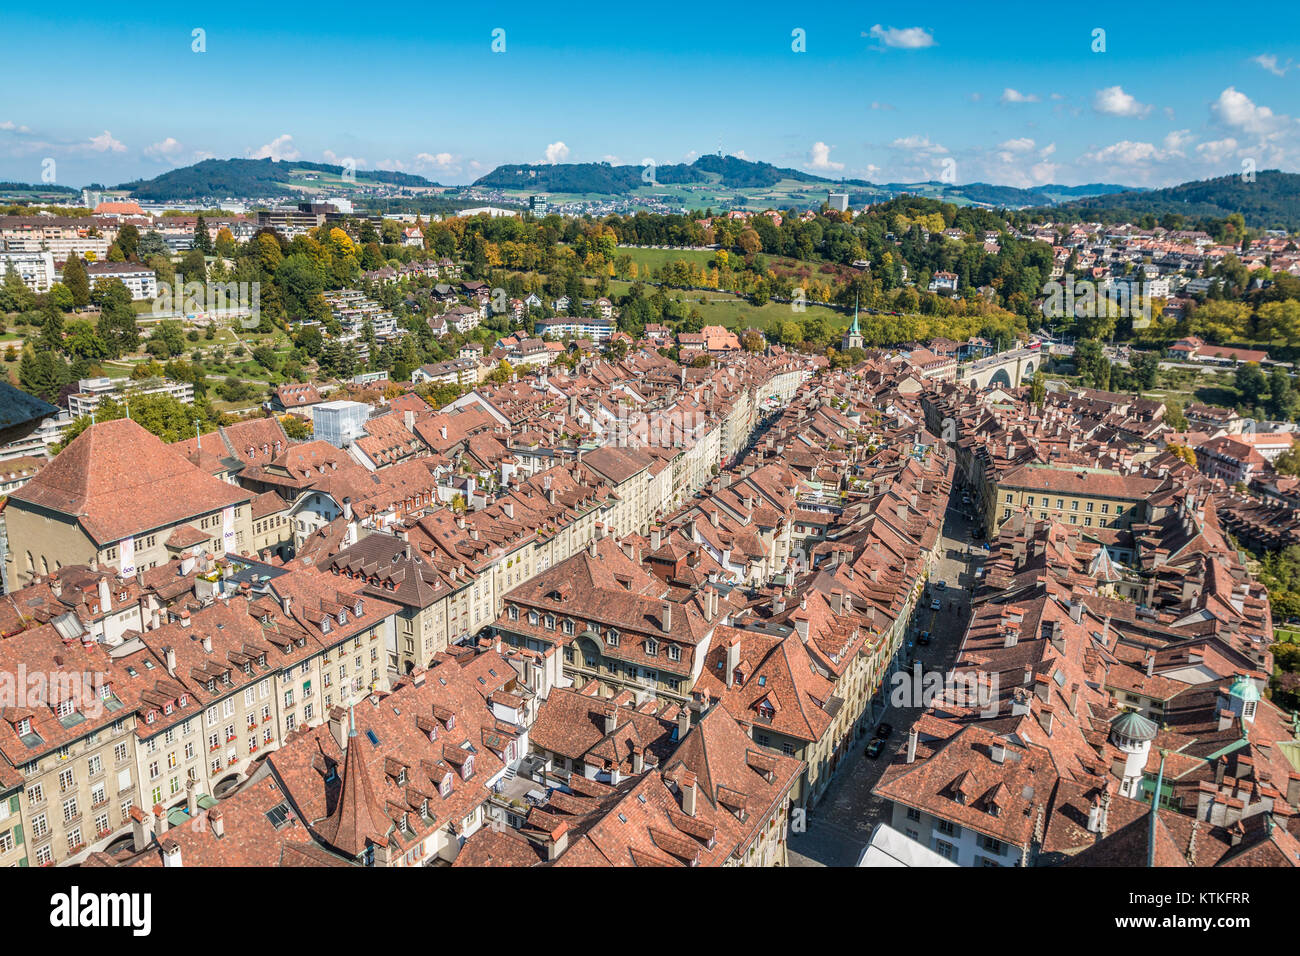 City of Bern Switzerland Stock Photo